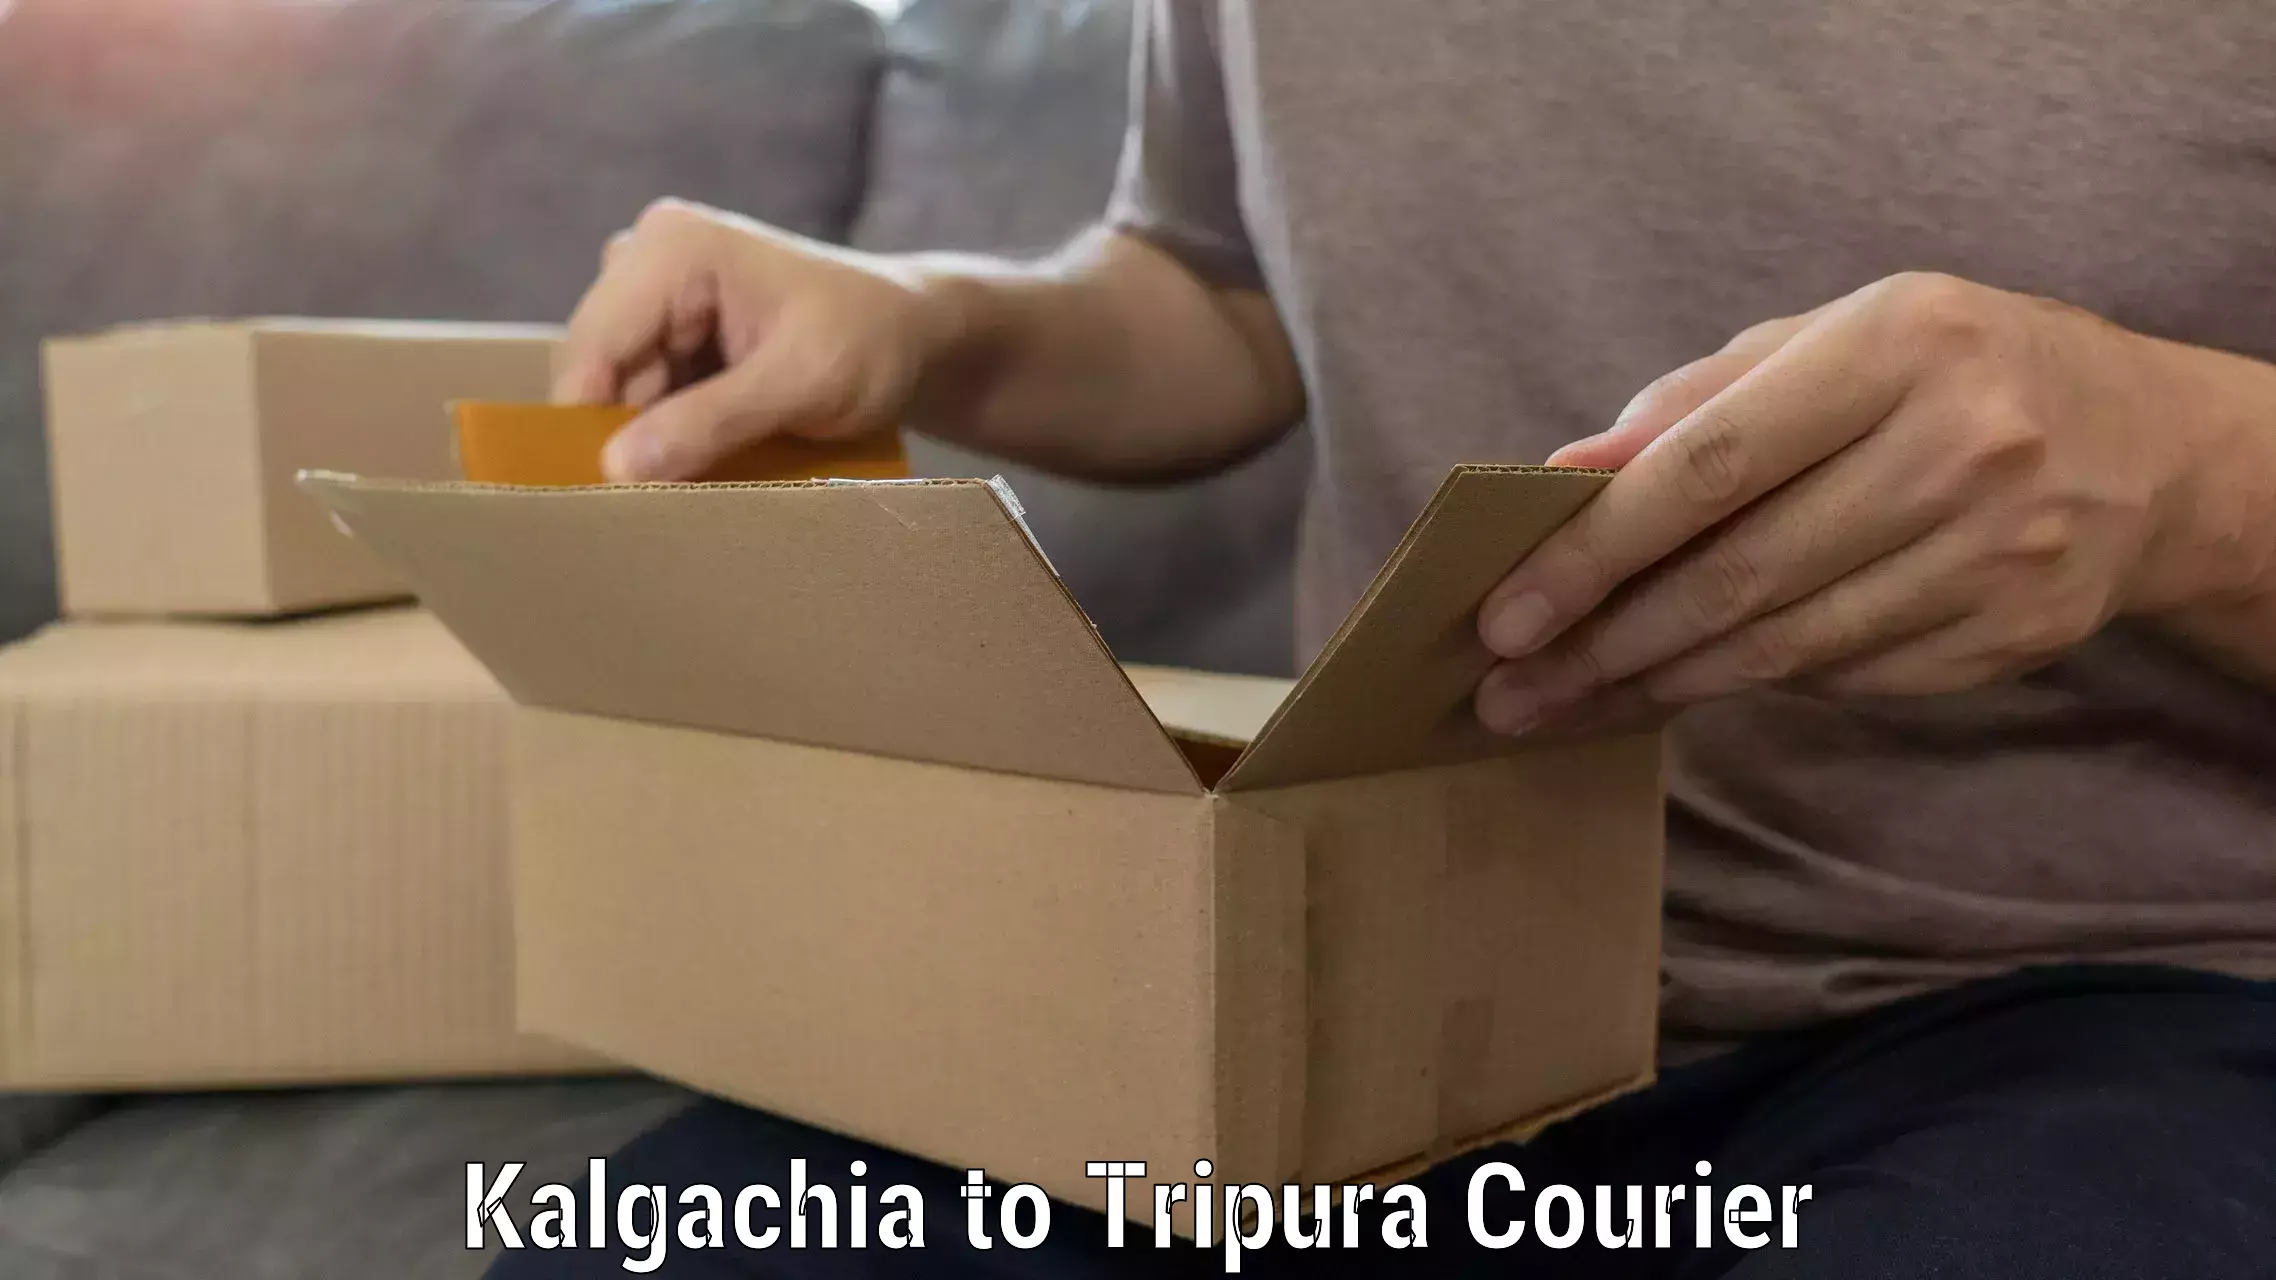 Full-service household moving Kalgachia to Tripura